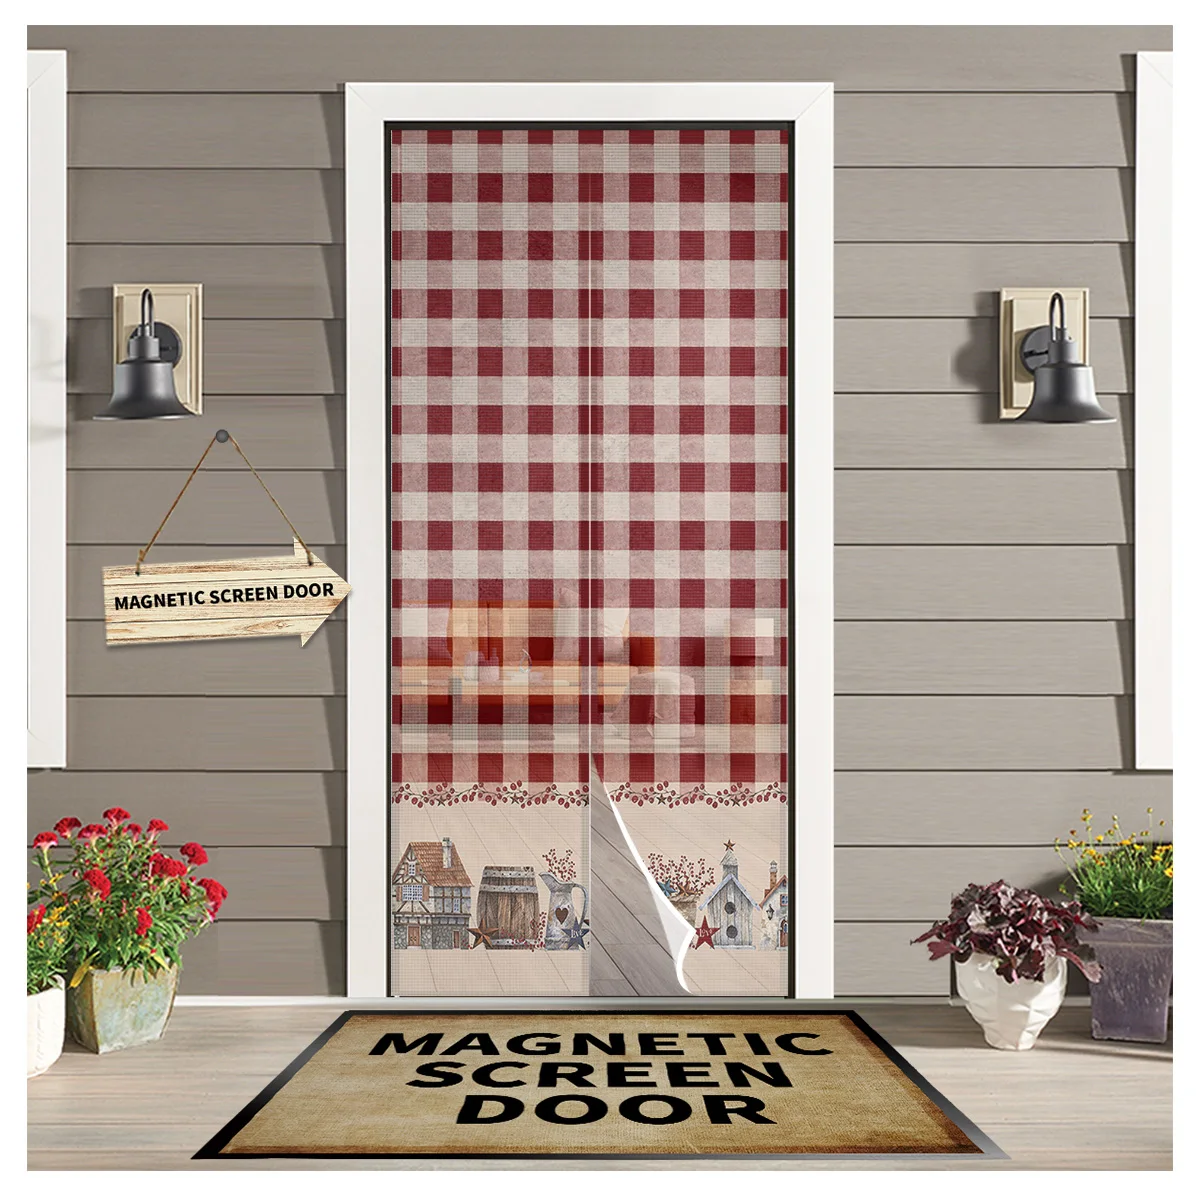 

Американская сельская звезда ягодная ферма защита от комаров сетка дверная занавеска магнитный дверной экран для спальни летняя дверь оконный экран s